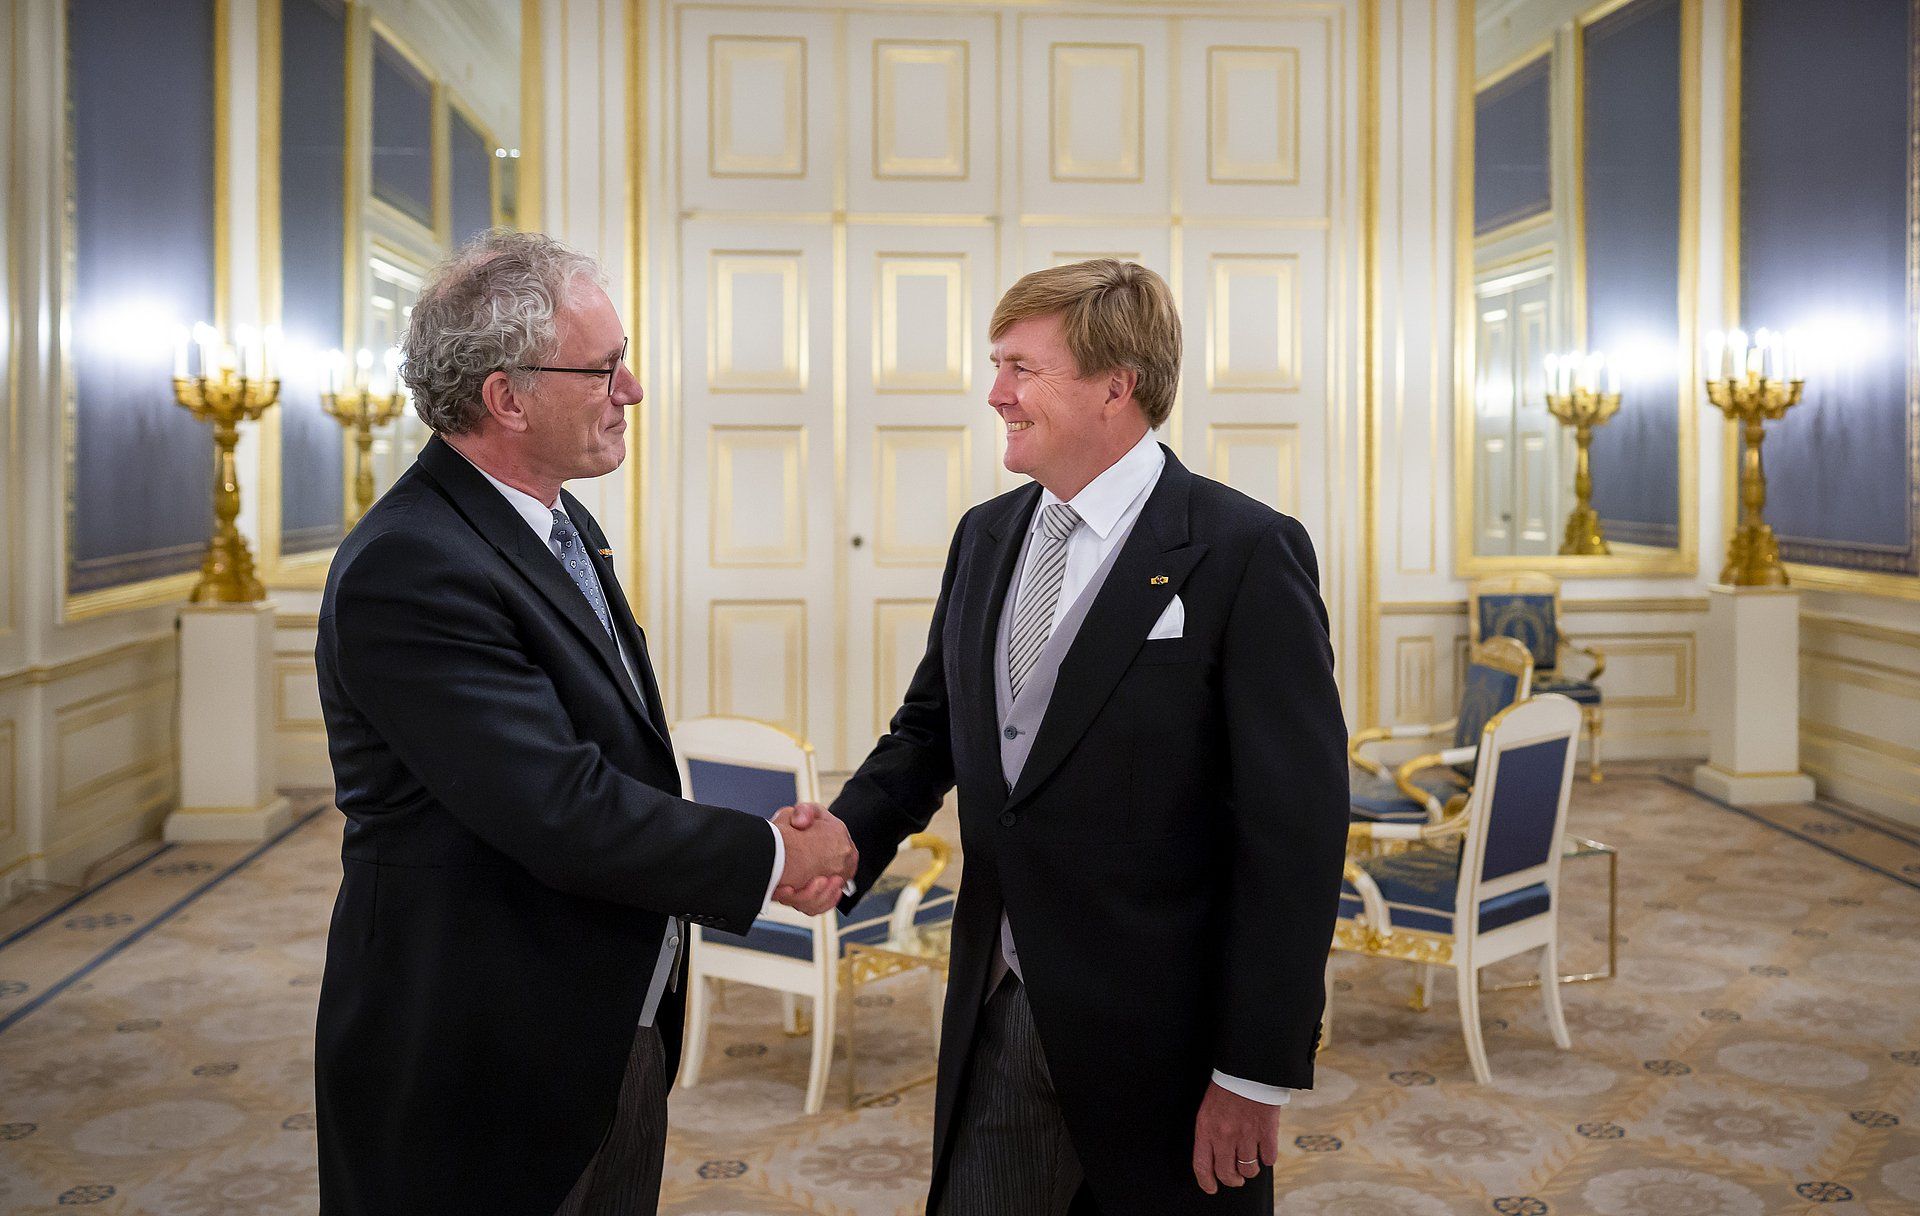 Koning Willem-Alexander tijdens de beëdiging van Thom de Graaf als vice-president van de Raad van